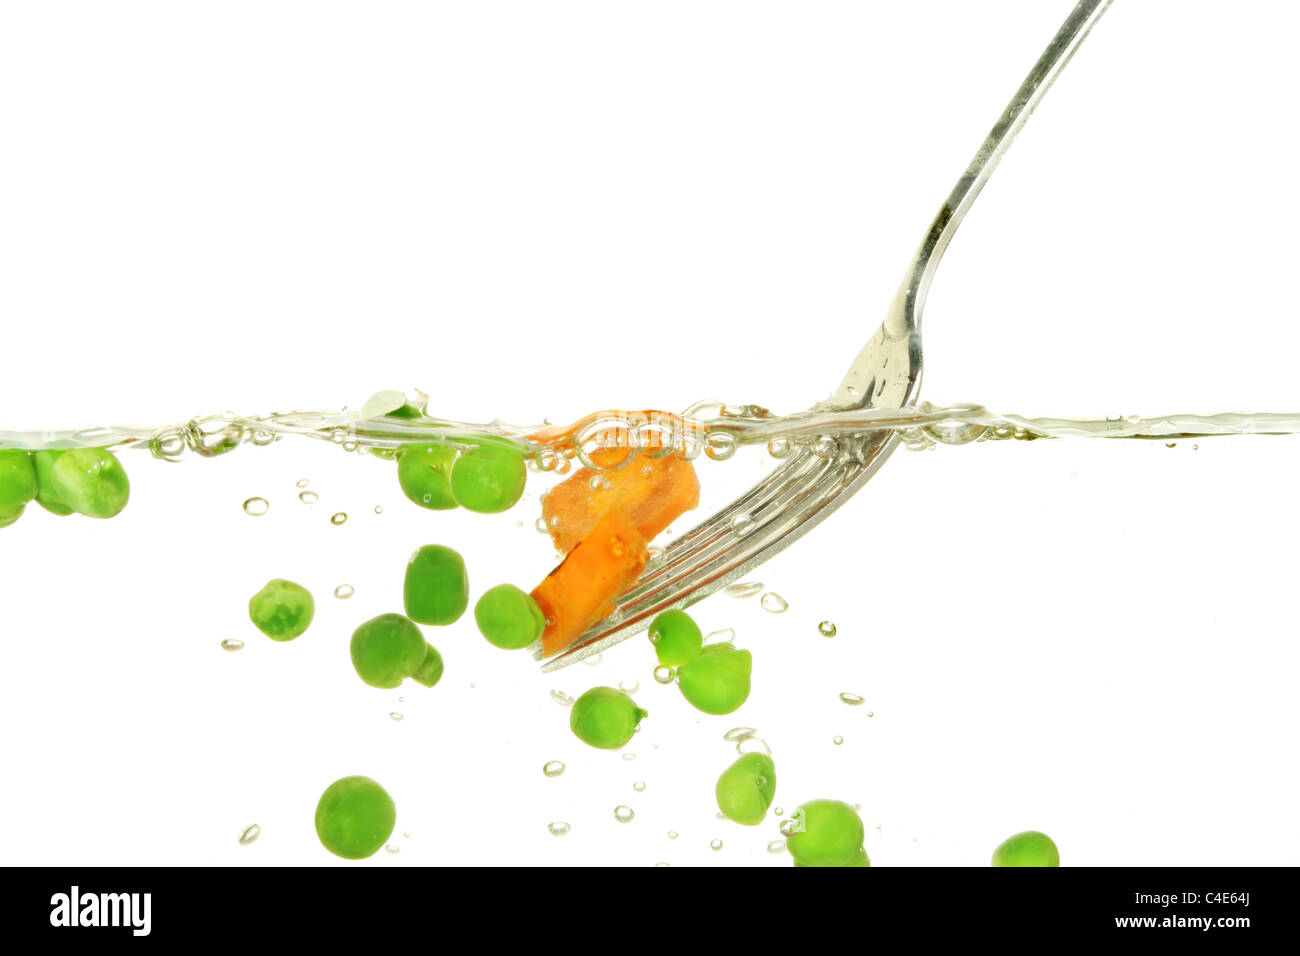 Petits pois et carottes à l'eau bouillante à l'aide d'une fourchette Banque D'Images